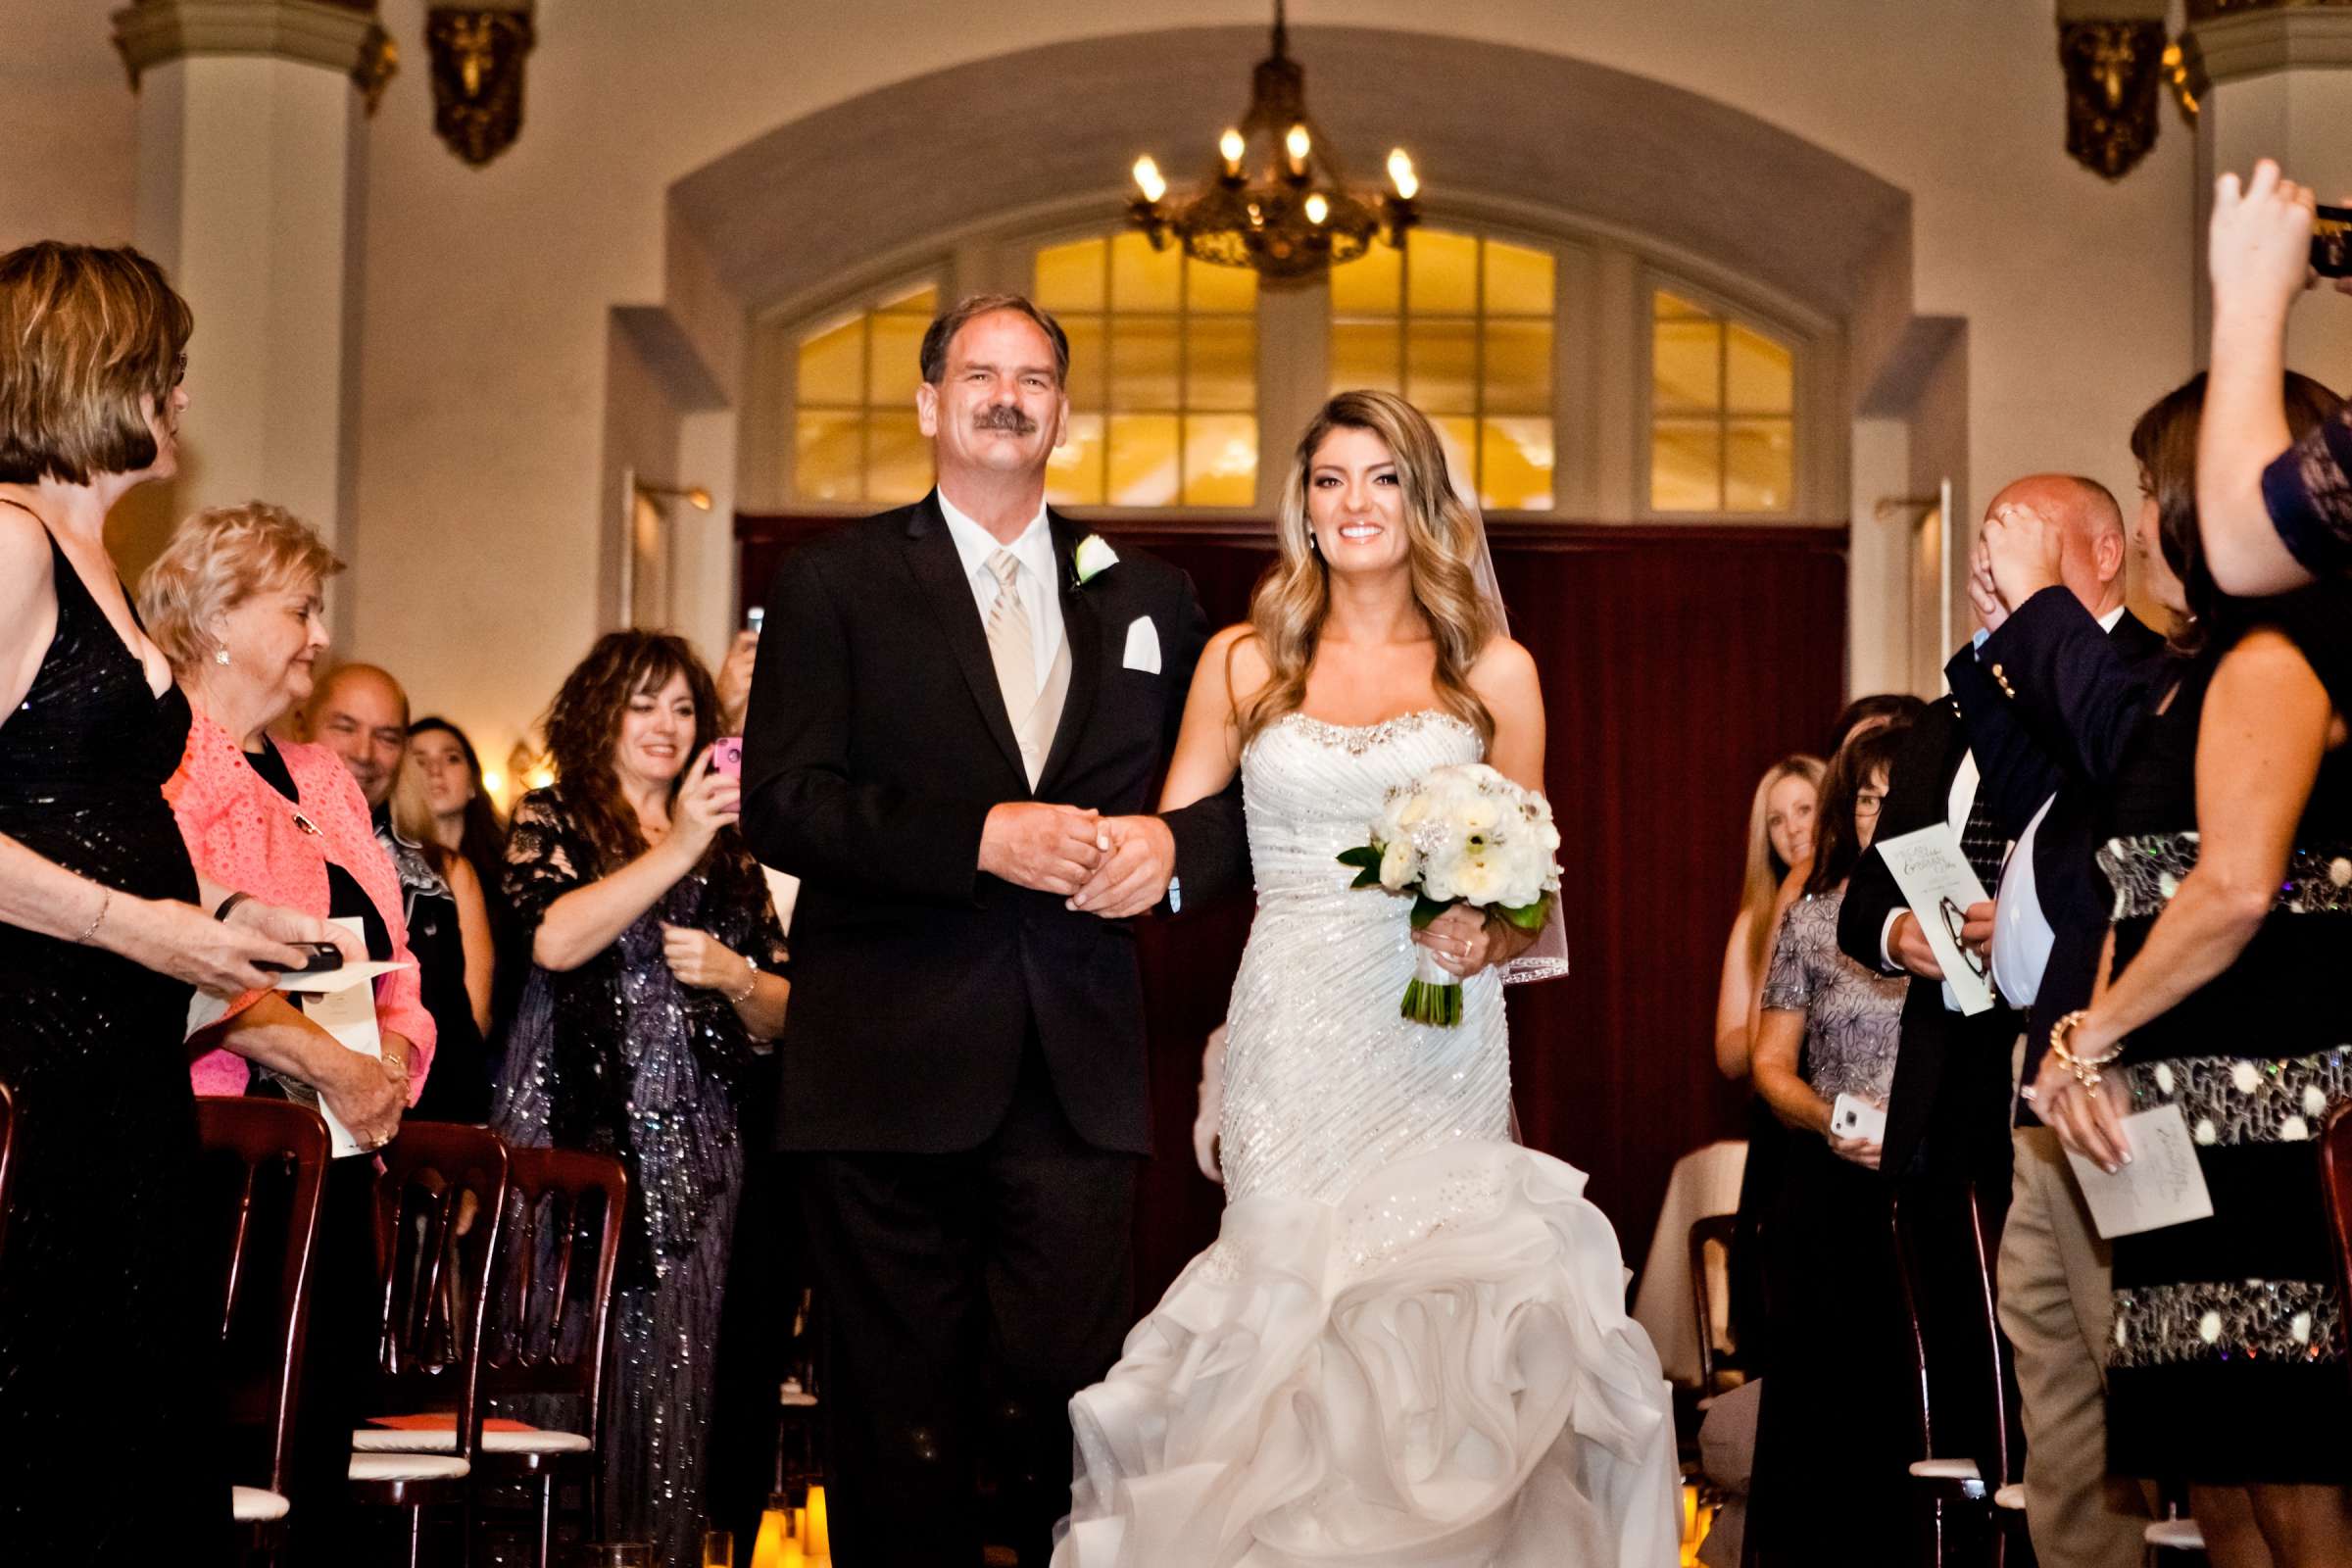 El Cortez Wedding, Megan and Brian Wedding Photo #340477 by True Photography